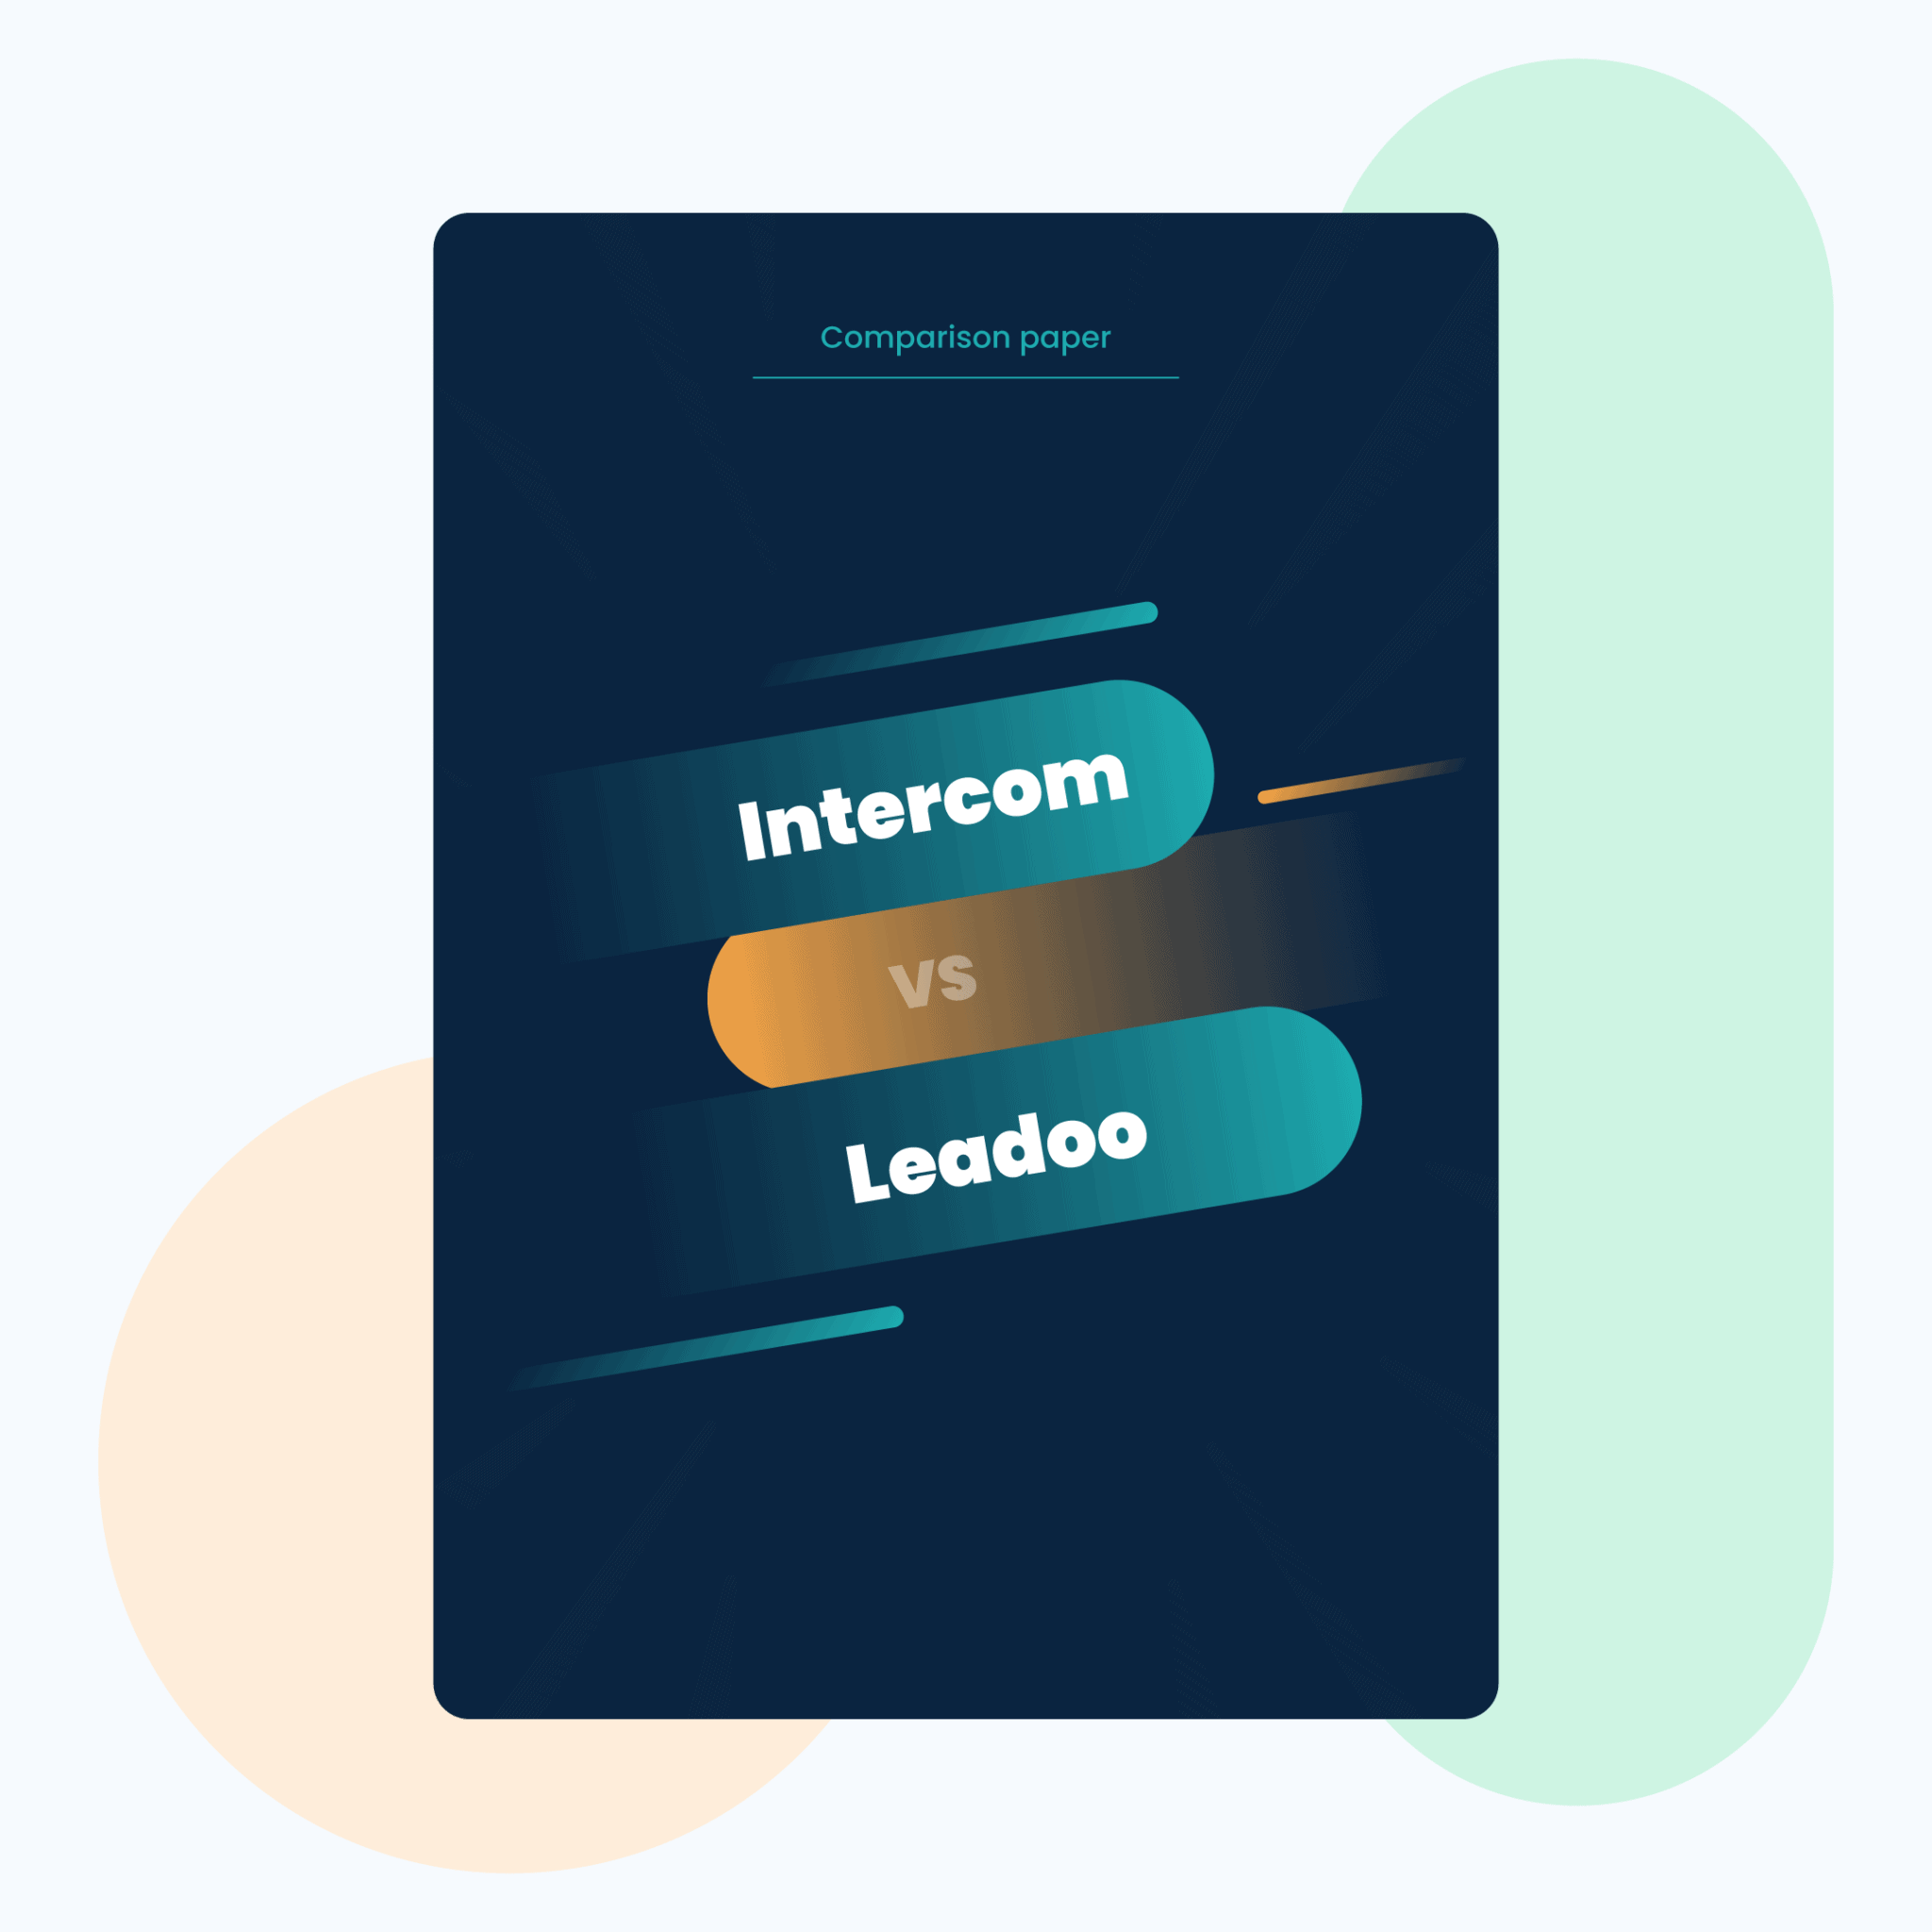 Intercom--vs-Leadoo-carousel-01